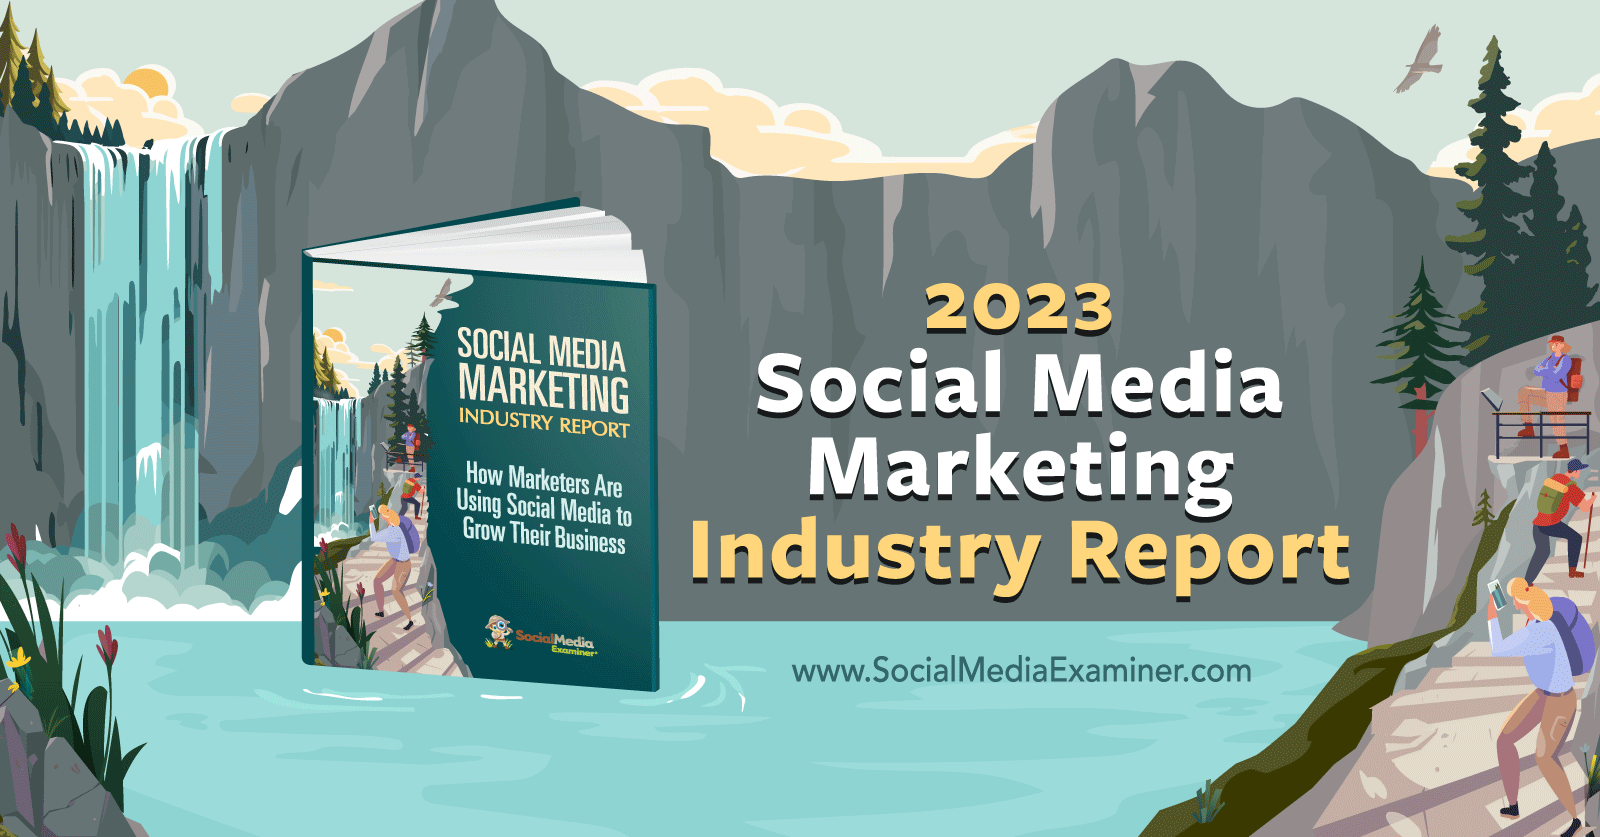 social-media-marketing-industry-report-2023-social-media-examiner